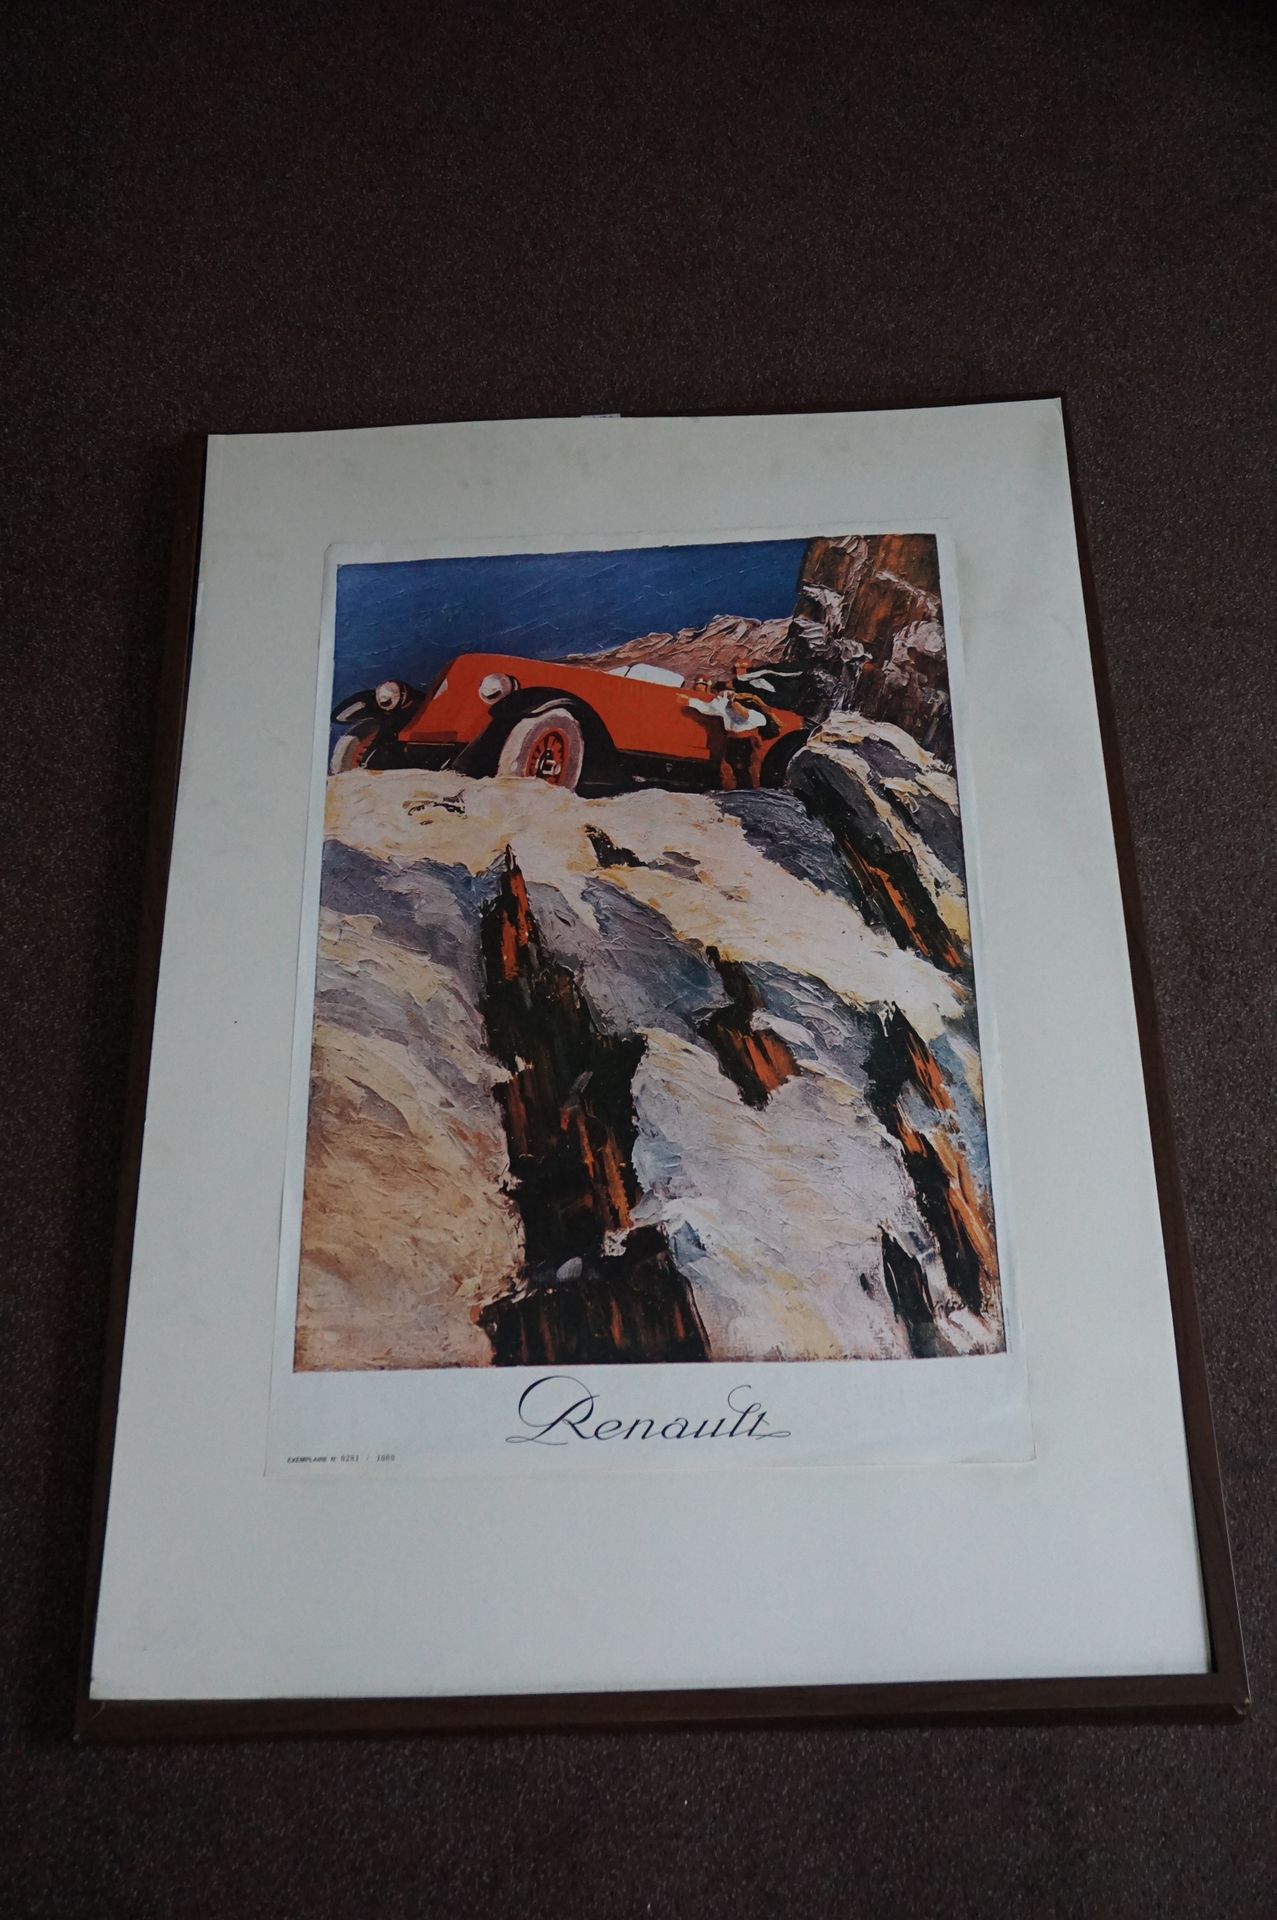 Null Renault-Plakat, das ein Gemälde aufgreift. Exemplar Nr. 281 / 1000
Mit Rahm&hellip;